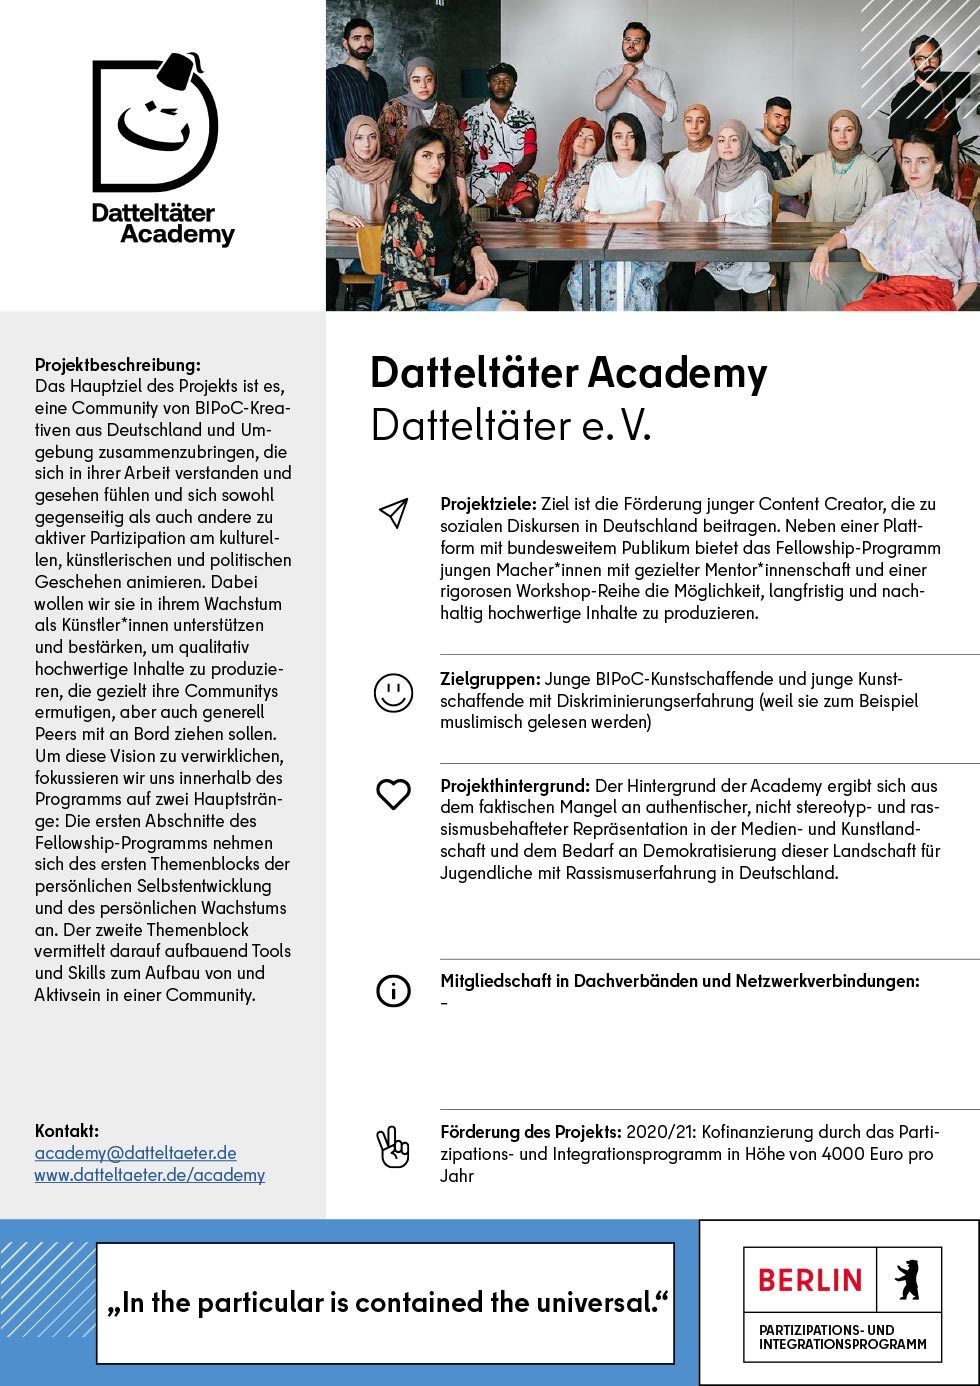 Datteltaeter-Academy